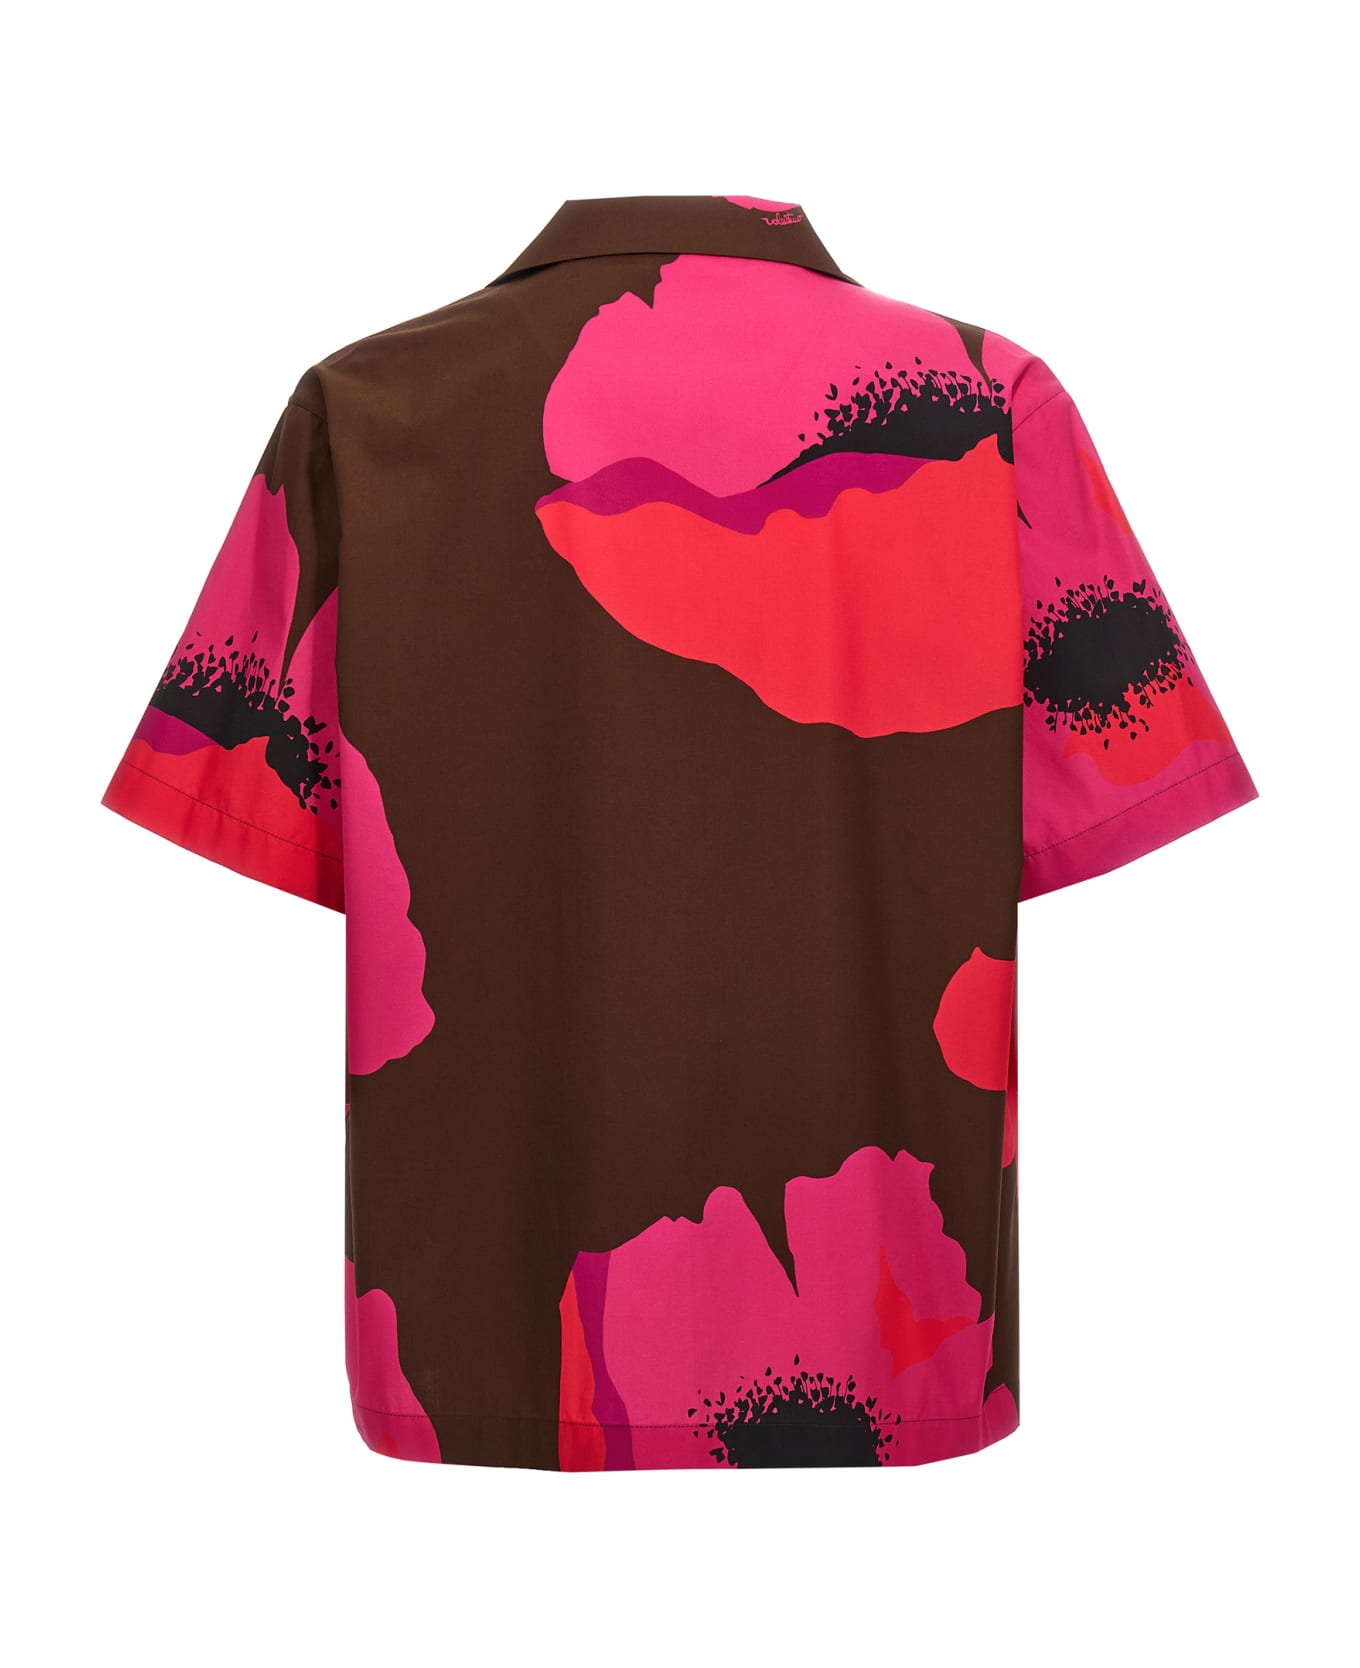 Valentino Garavani Valentino Floral Print Shirt - Multicolor シャツ